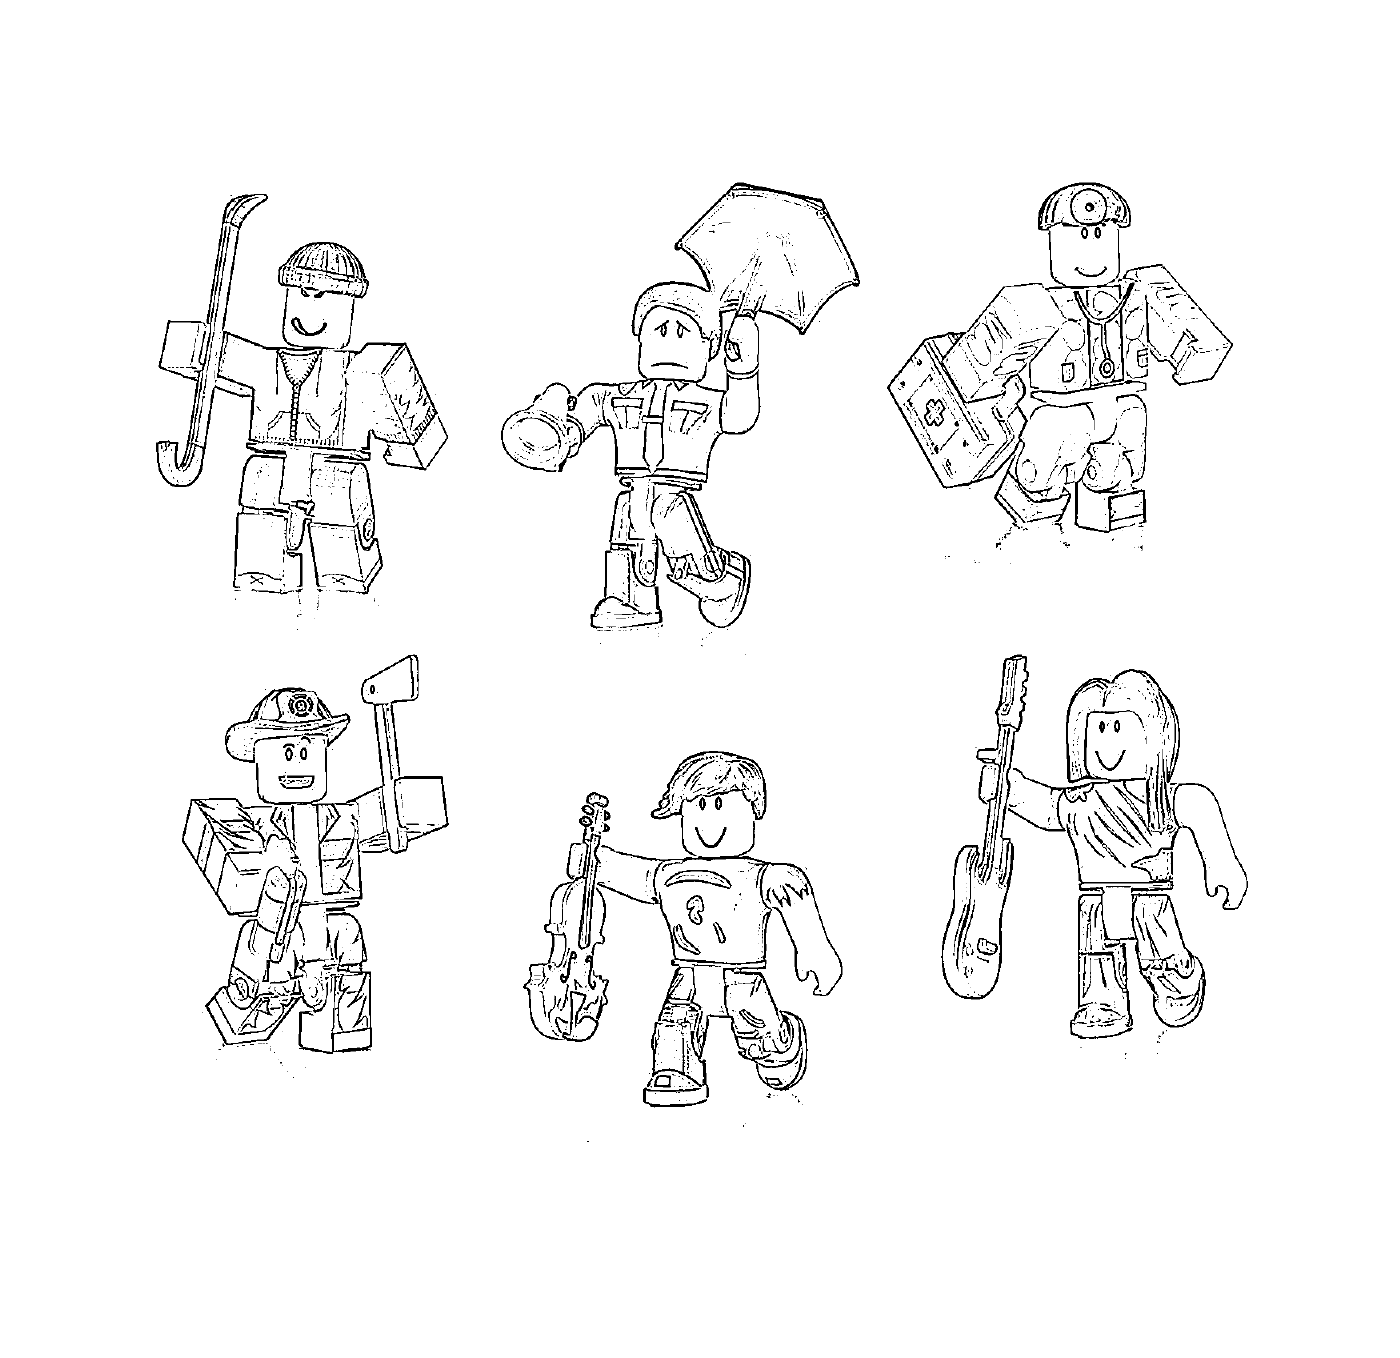  Roblox caracteres desenhados 